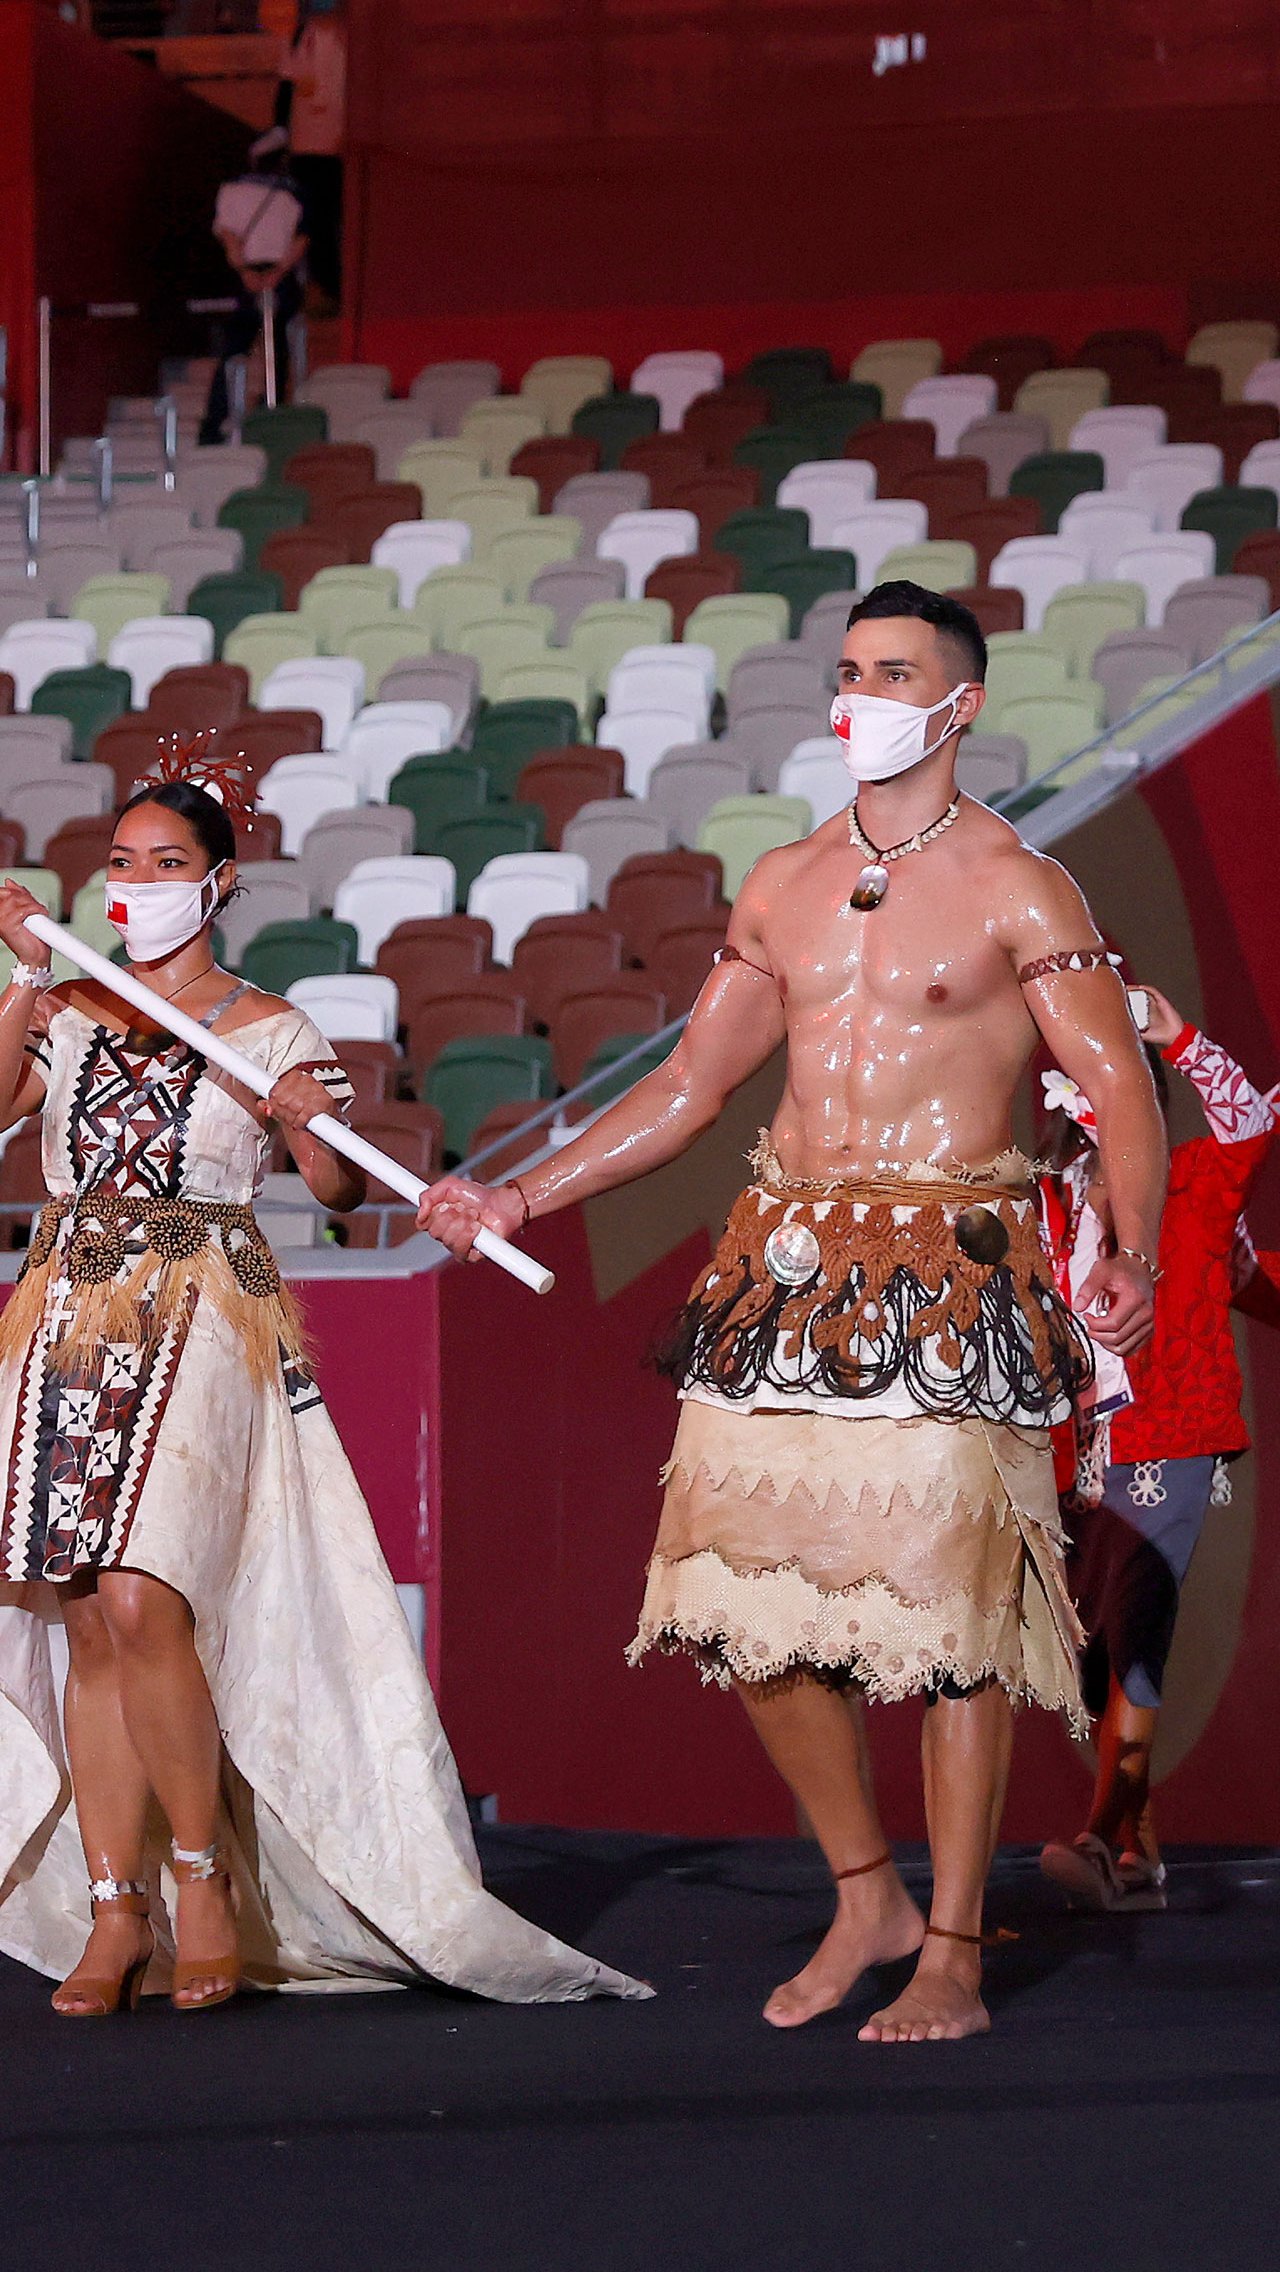 Не отстал от него и знаменитый тонганец Пита Тауфатофуа. Как и на церемонии открытия Олимпиады в Рио-де-Жанейро, тхэквондист был одет в юбку и облит маслом.